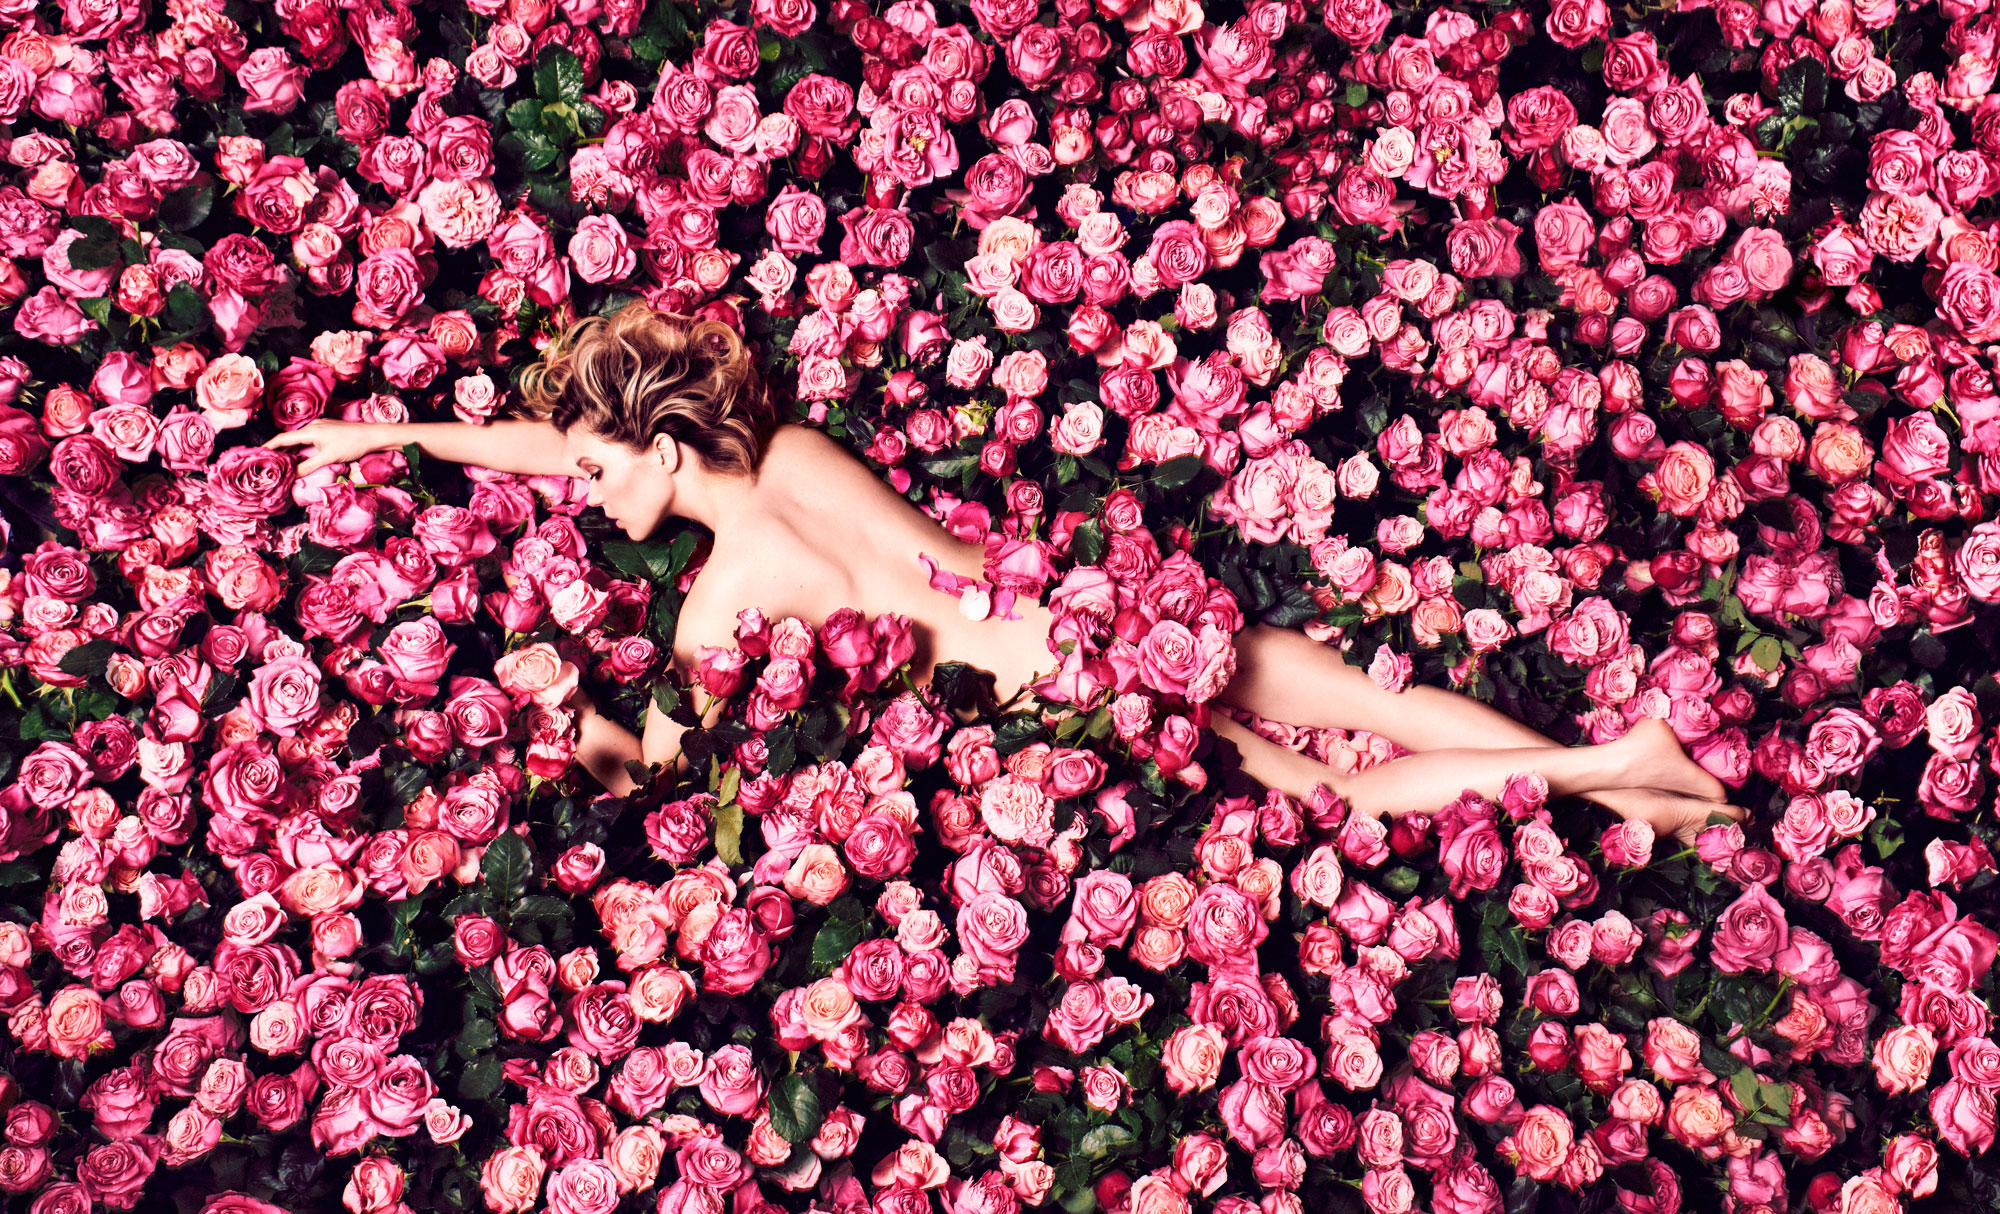 Lea Seydoux topless